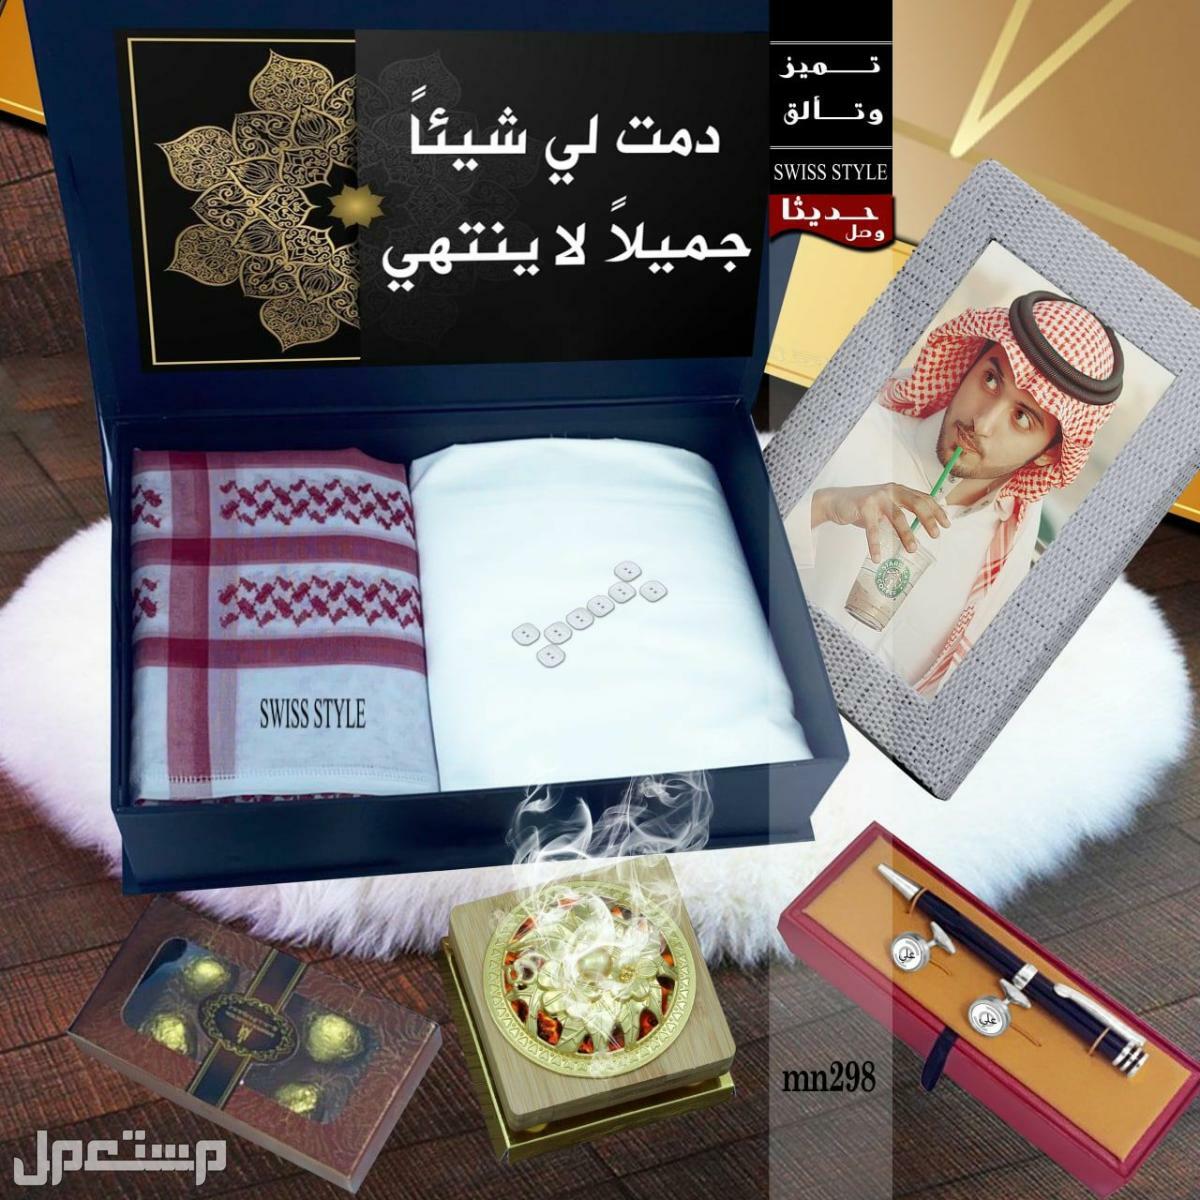 الهديه المناسبه لكل الاحبه في رفحاء بسعر 300 ريال سعودي